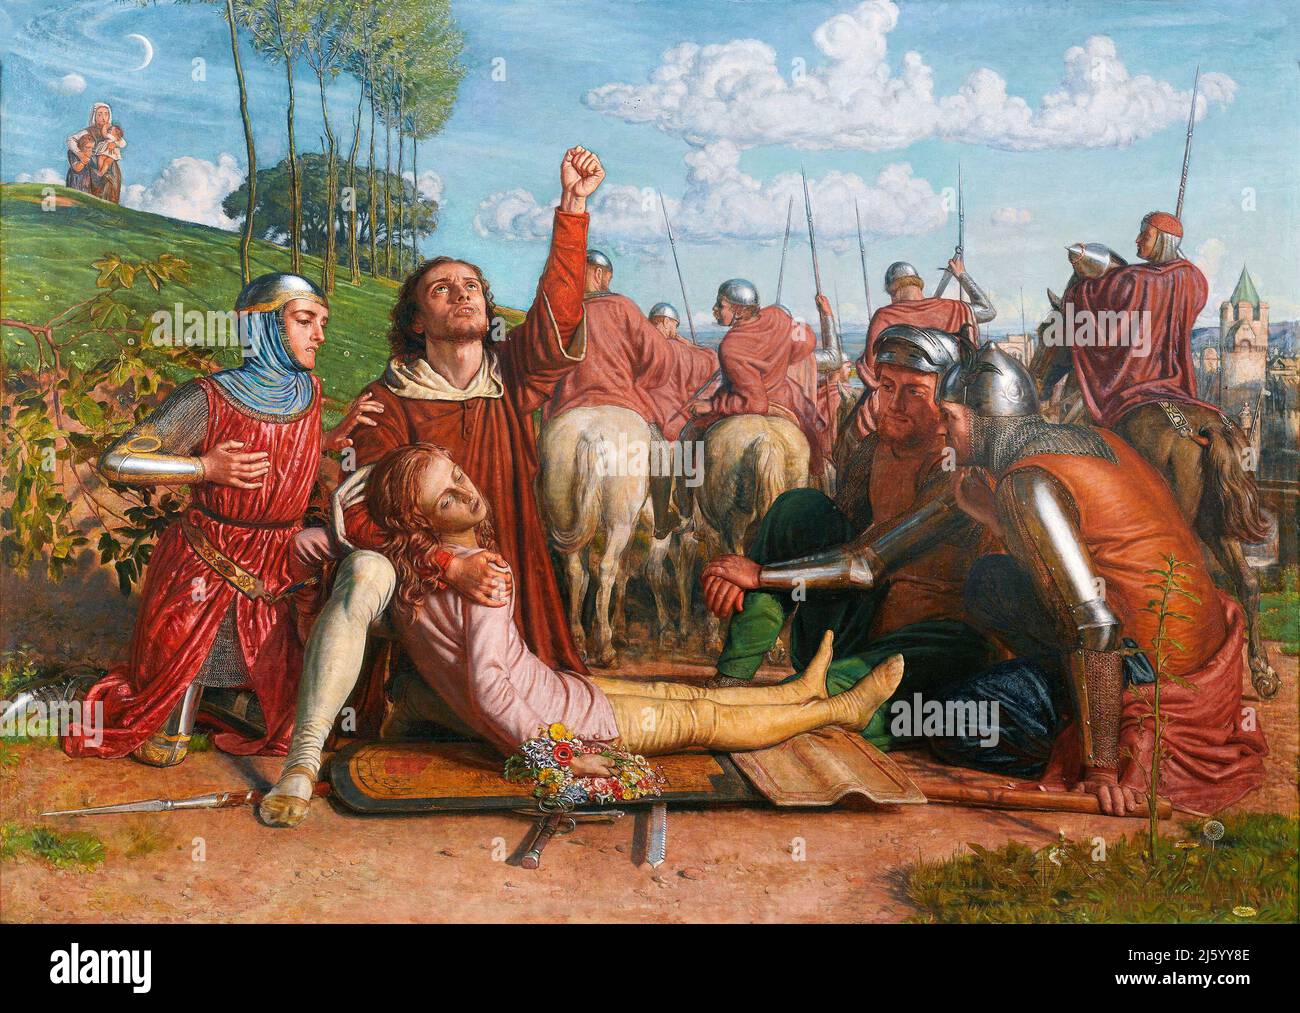 „Rienzi gelobte Gerechtigkeit für den Tod seines jungen Bruders zu erlangen, der zwischen den Colonna- und den Orsini-Fraktionen in einem Gefecht erschlagen wurde“ von William Holman Hunt (1827-1910), Öl auf Leinwand, 1849. Holman Hunt war eine führende Figur in der Pre-Raphaelite-Bewegung des 19.. Jahrhunderts. Stockfoto